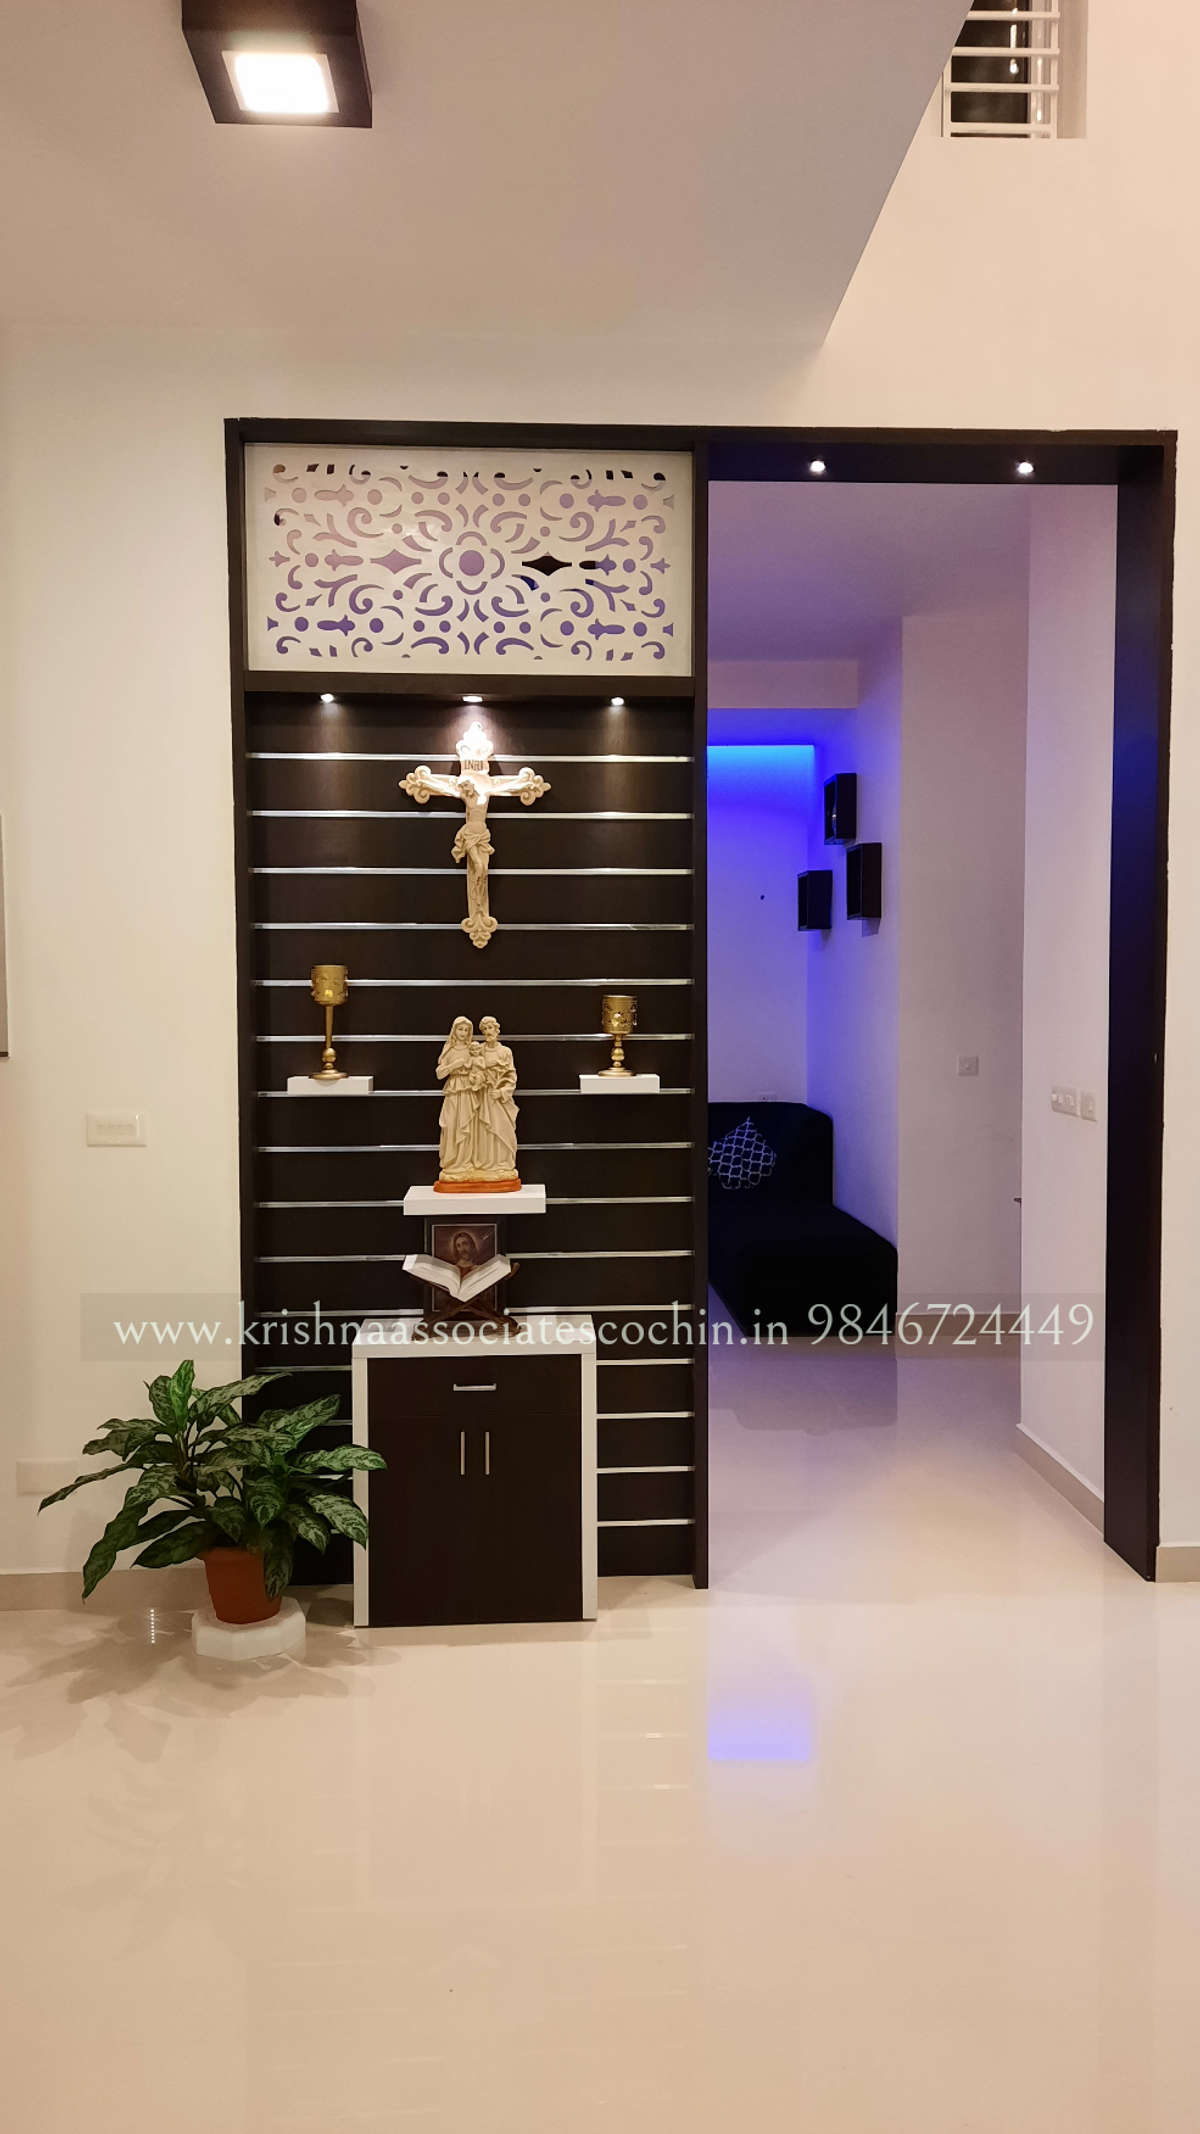 partition cum prayer unit

#ChristianPrayerRoom
#Architectural&Interior
#HomeDecor